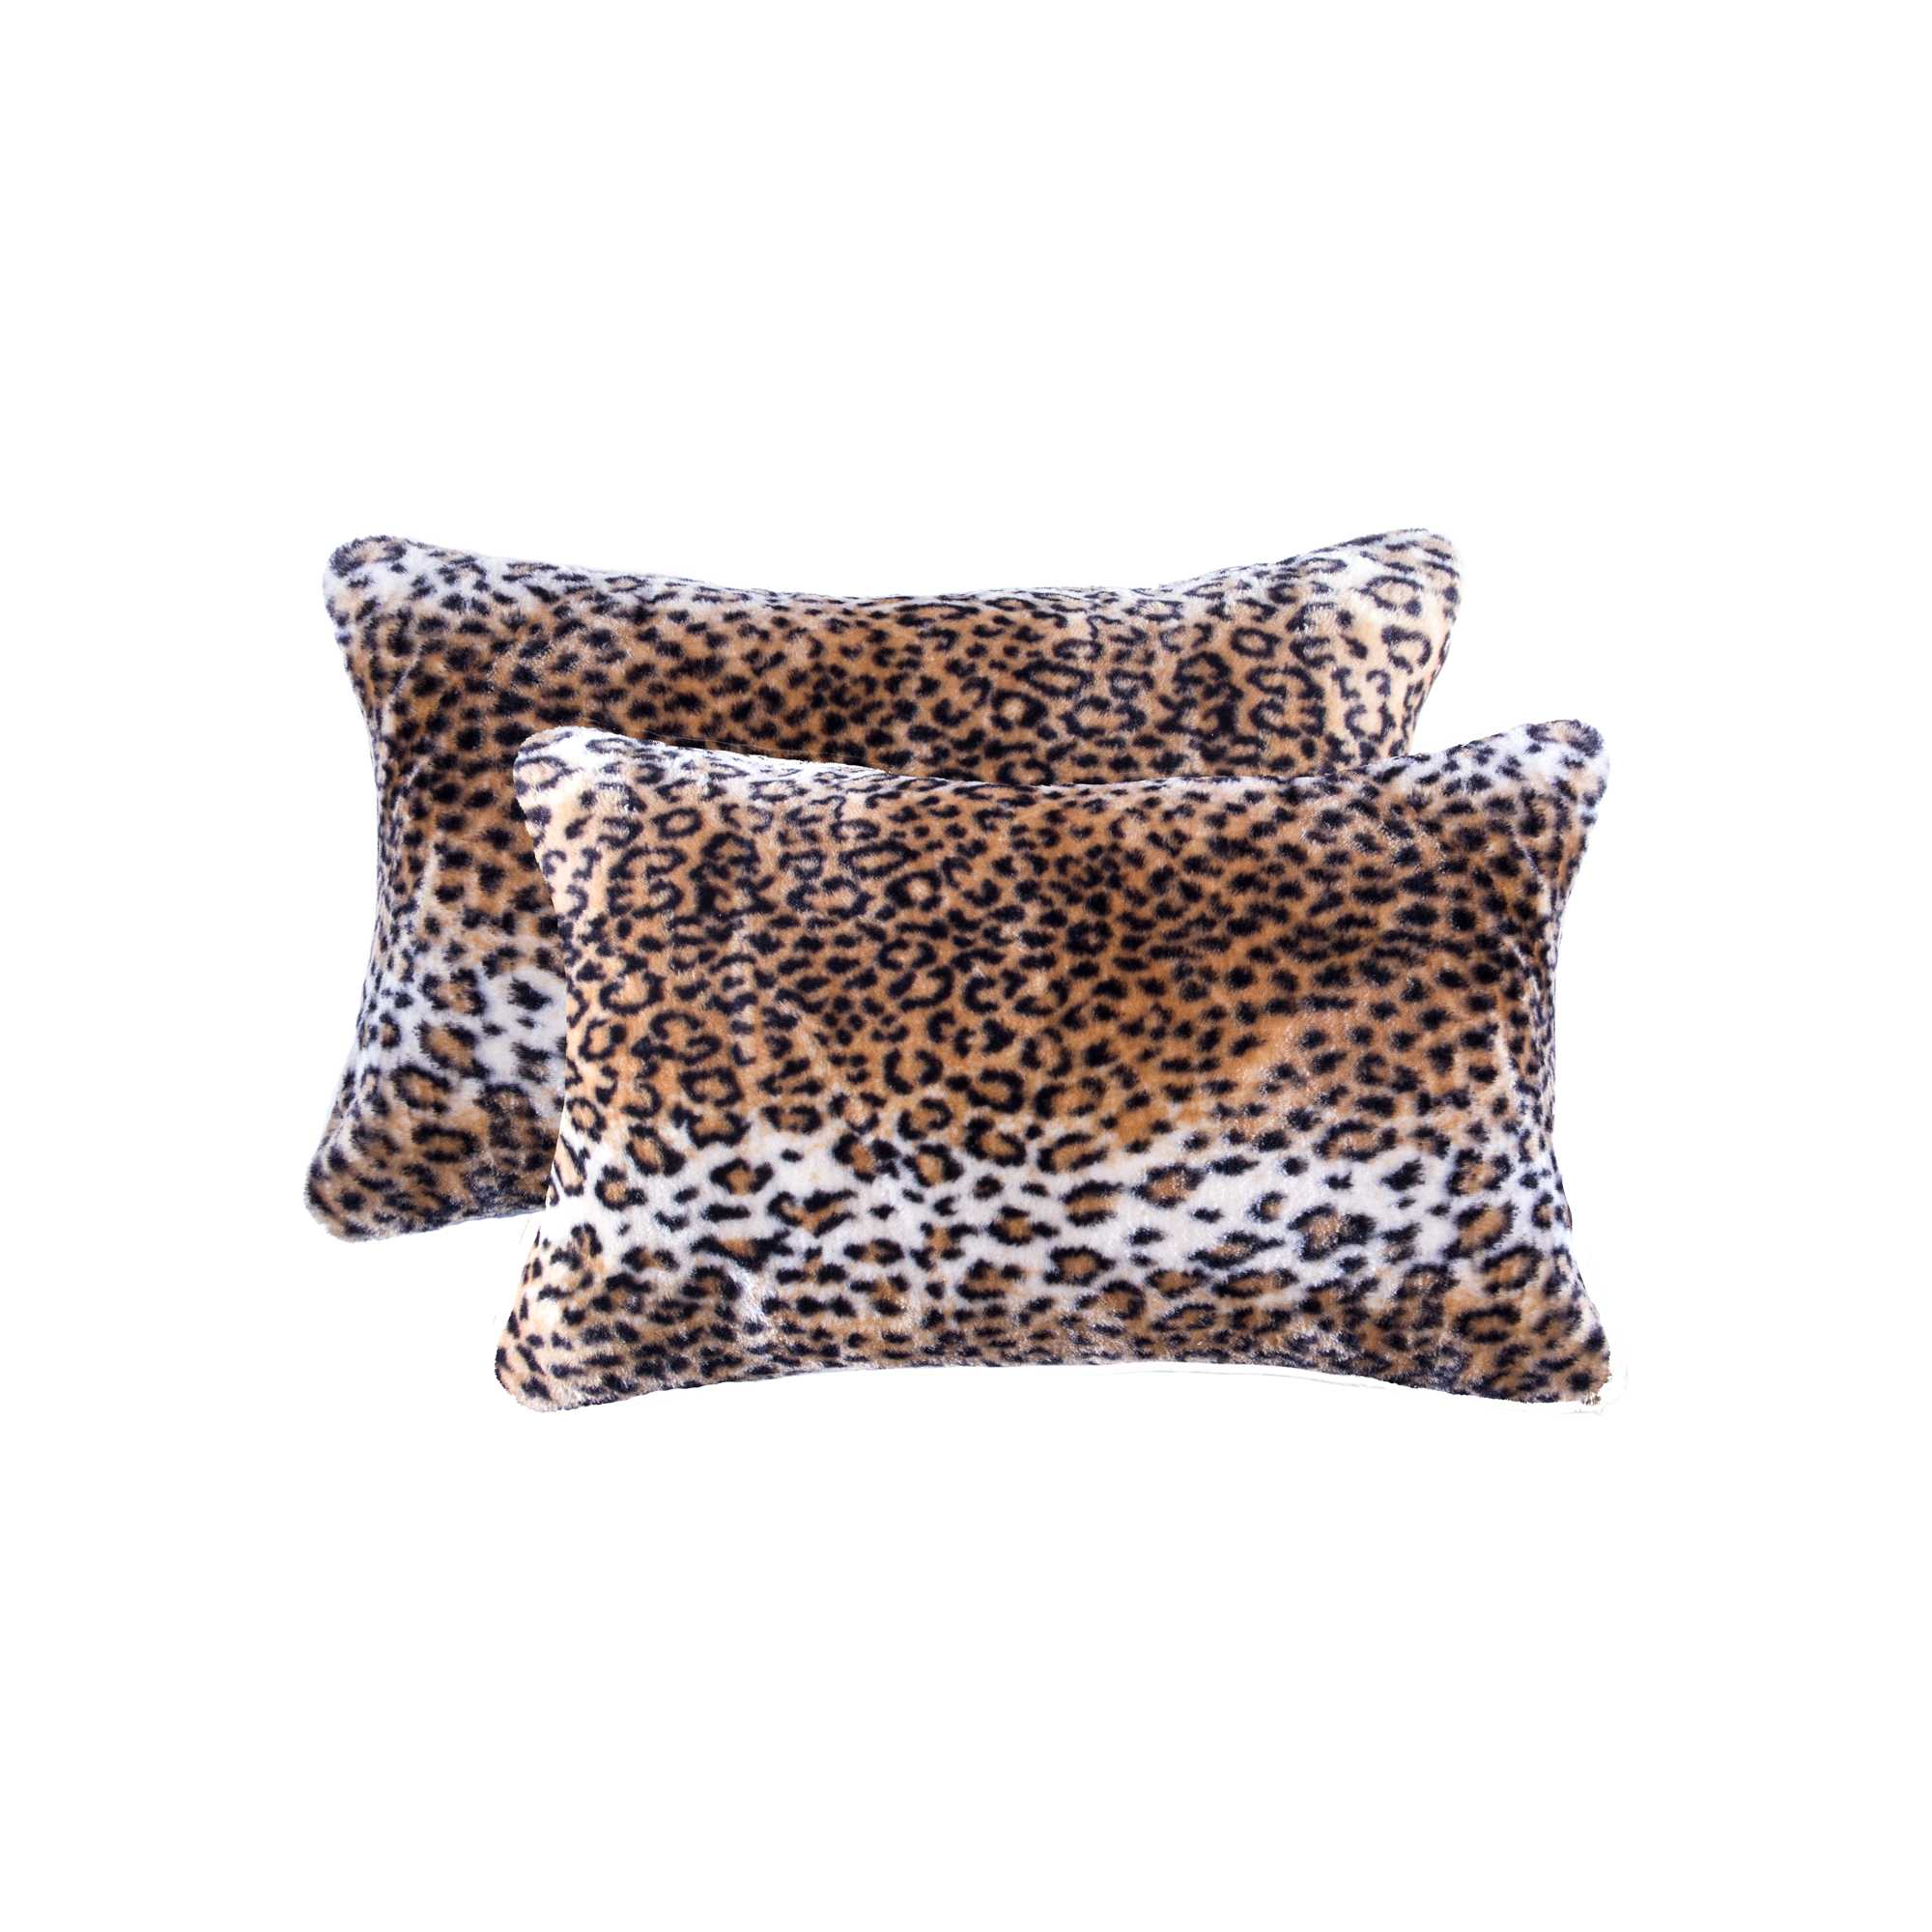 12" x 20" x 5" Leopard Faux - Pillow 2-Pack